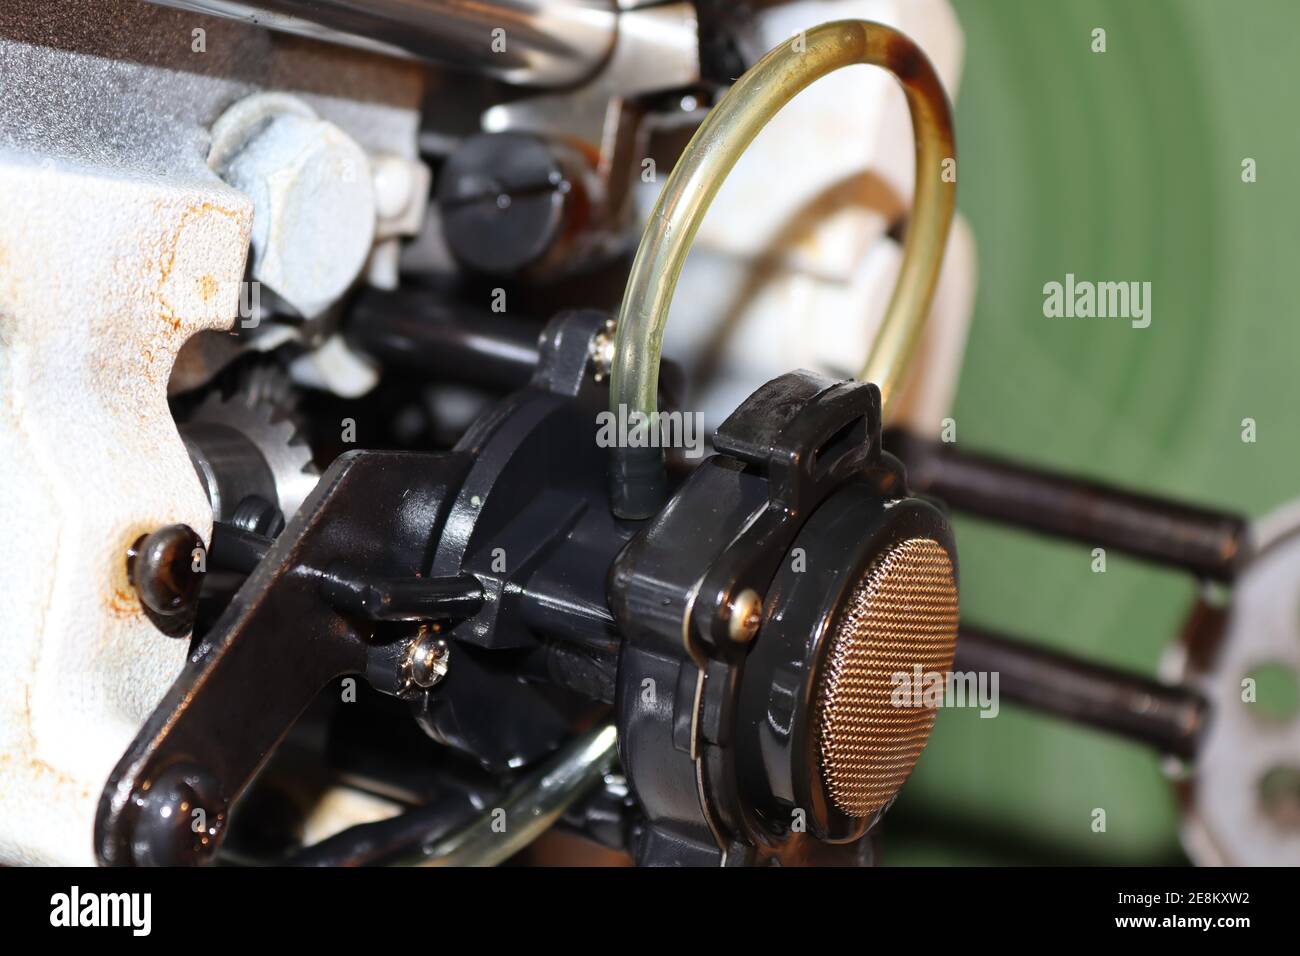 Aspetto meccanico di una macchina per cucire ad alta velocità e del suo gruppo di alimentazione dell'olio. Foto Stock